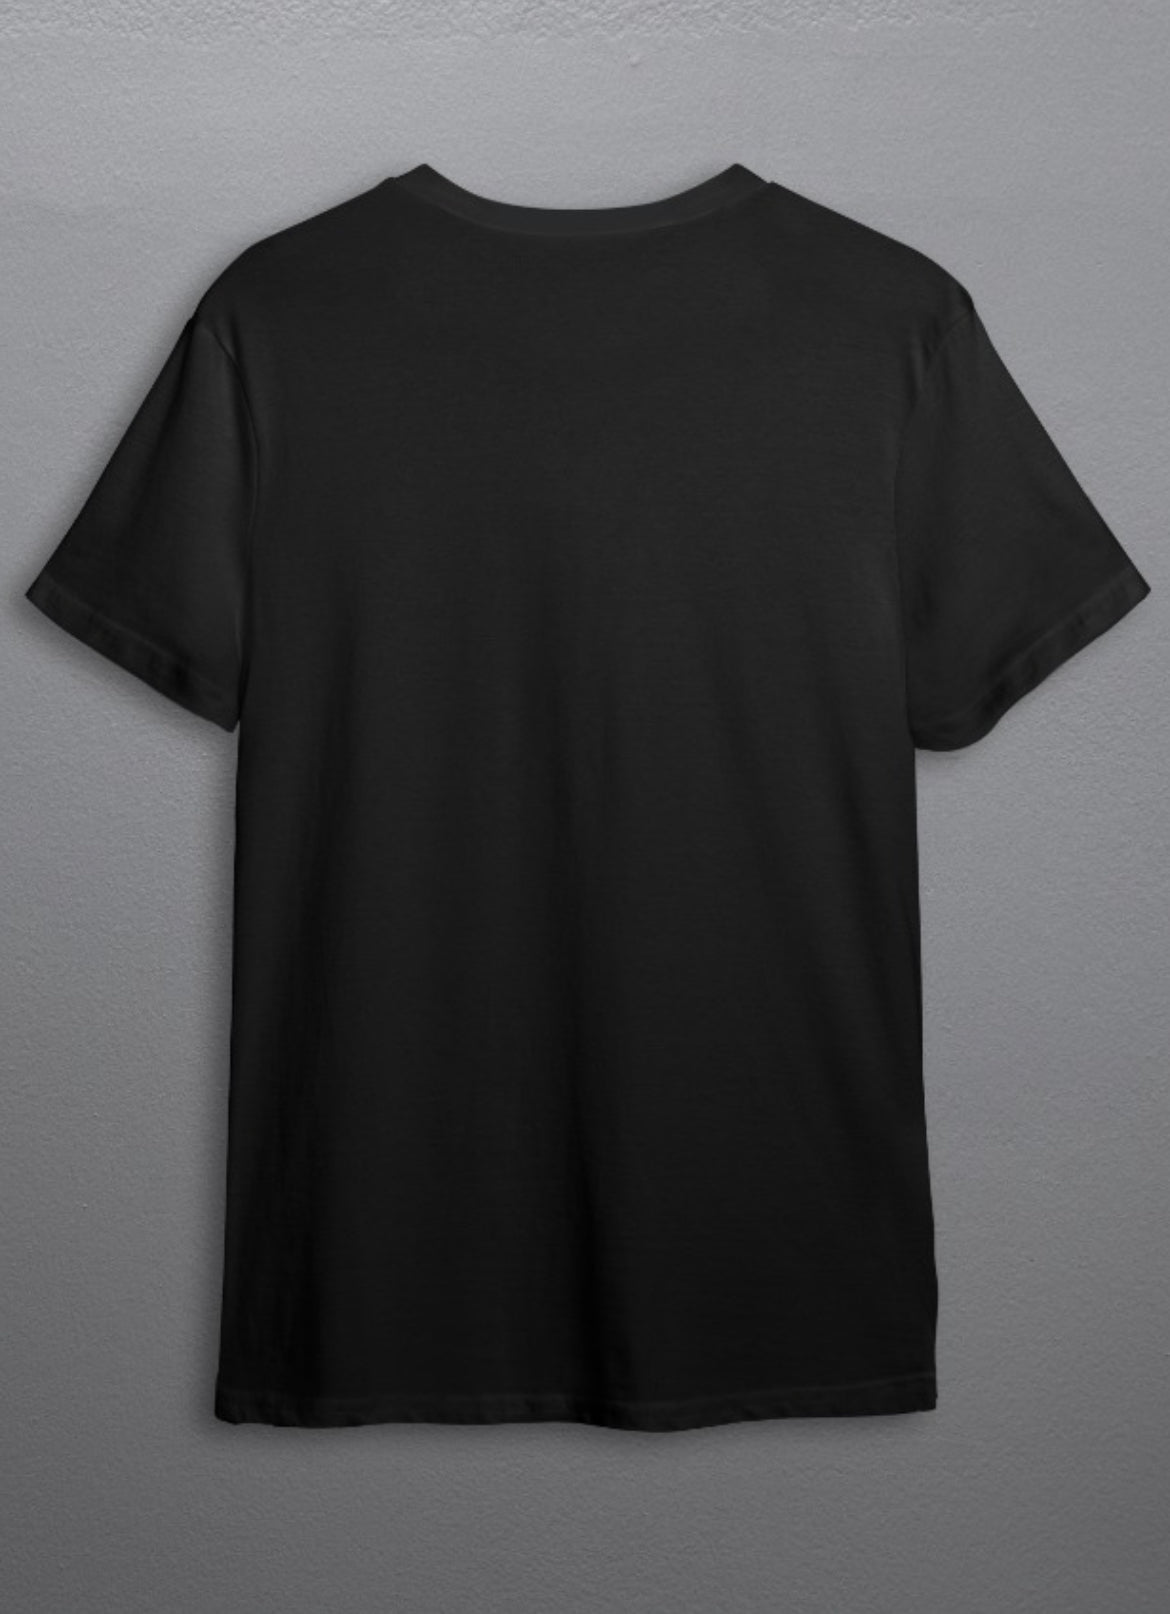 Techno - Dark Tshirt Printed